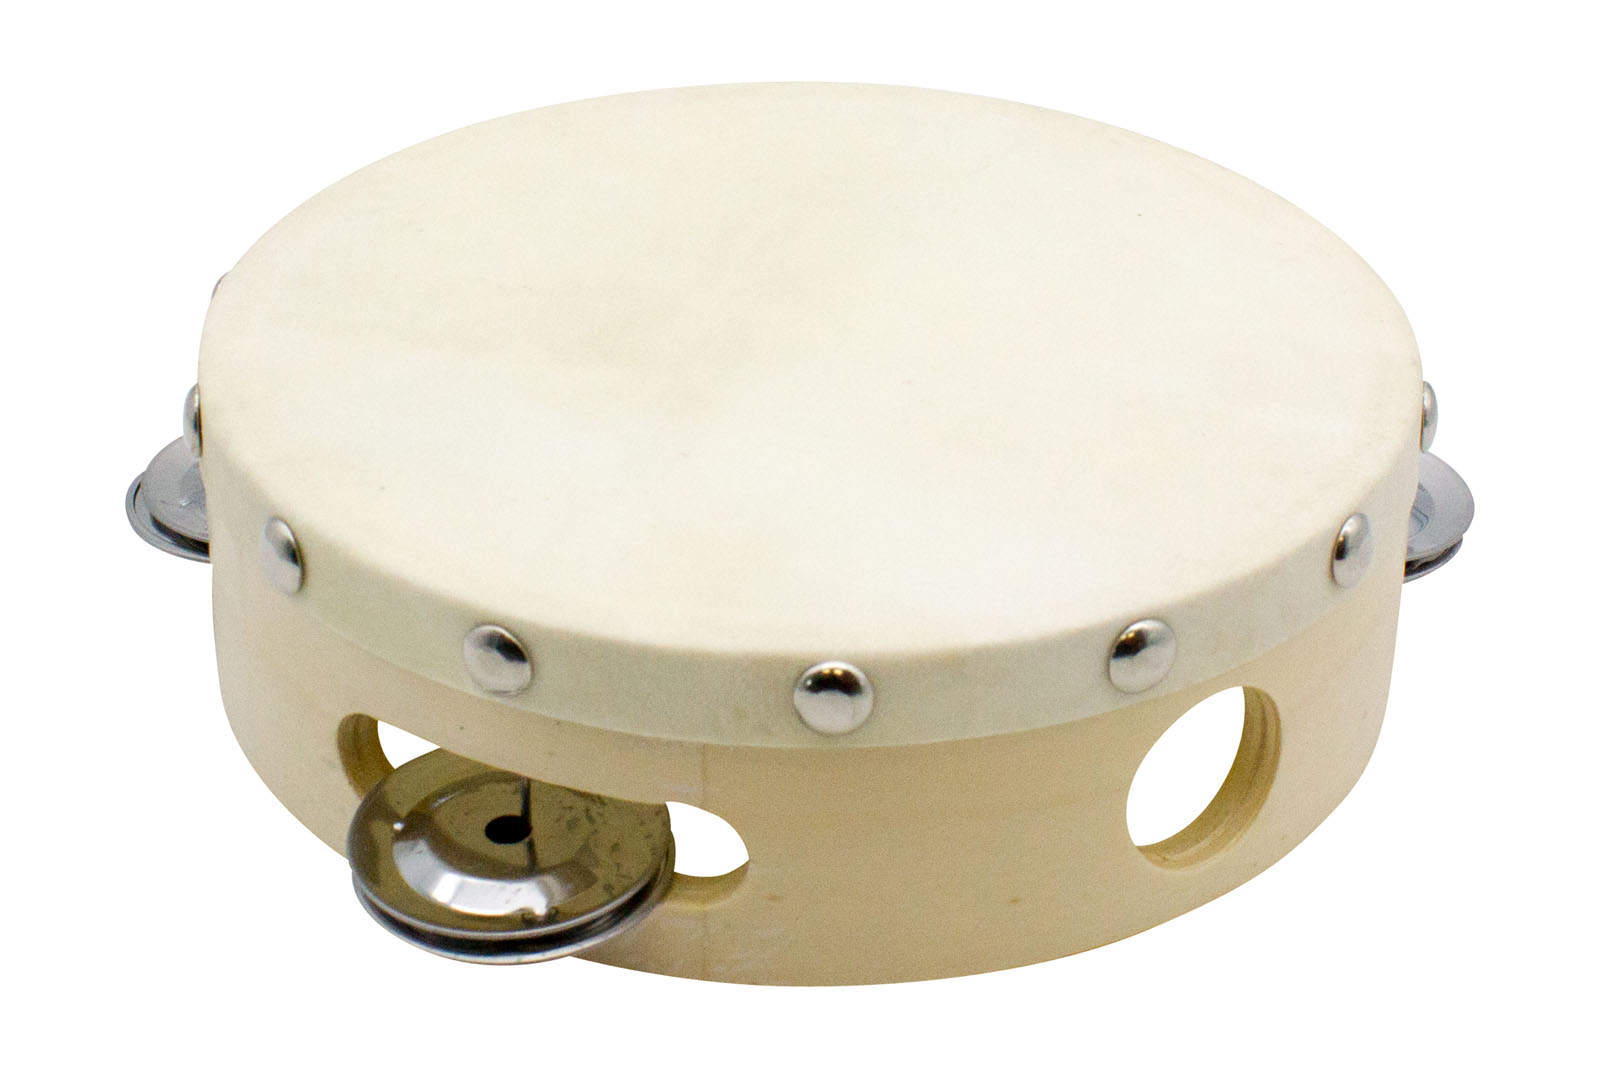 Tamburin Handtrommel Musikinstrument für Kinder D: 15 cm aus Holz mit 4 Schellen - 3832